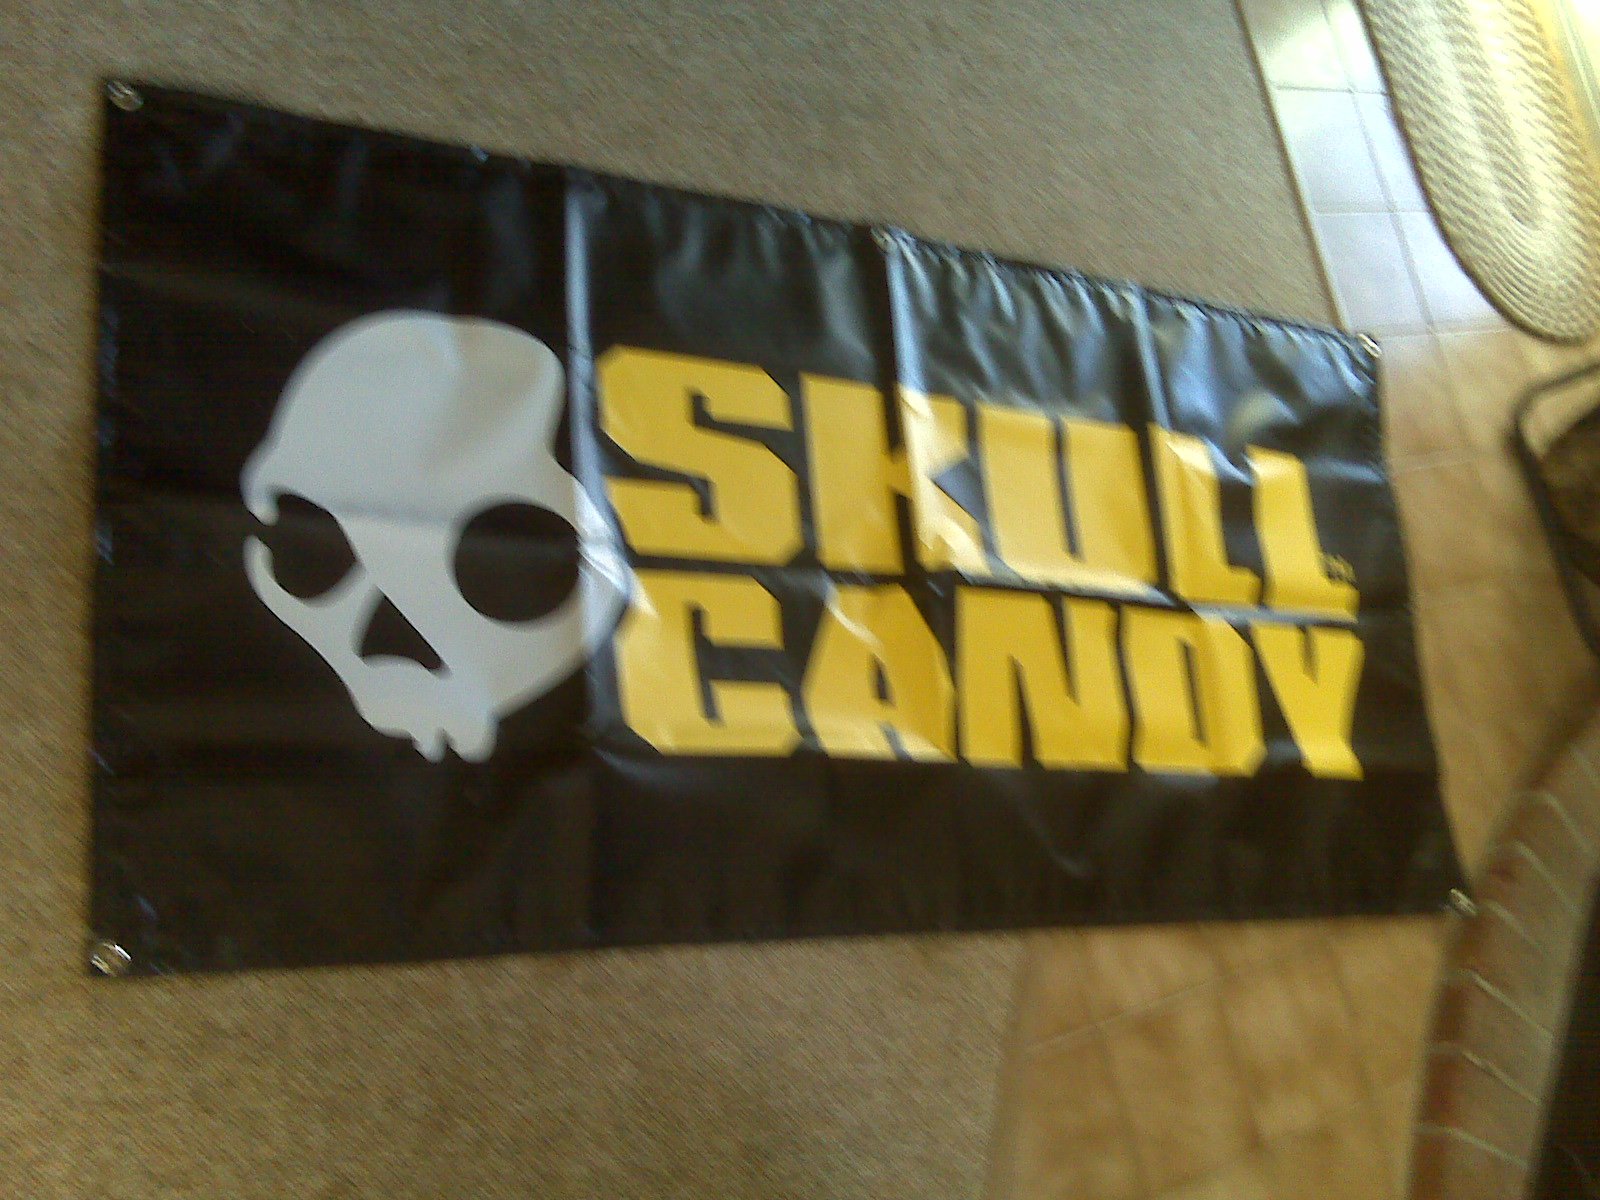 FS/FT: 3x6 ft Skullcandy Banner